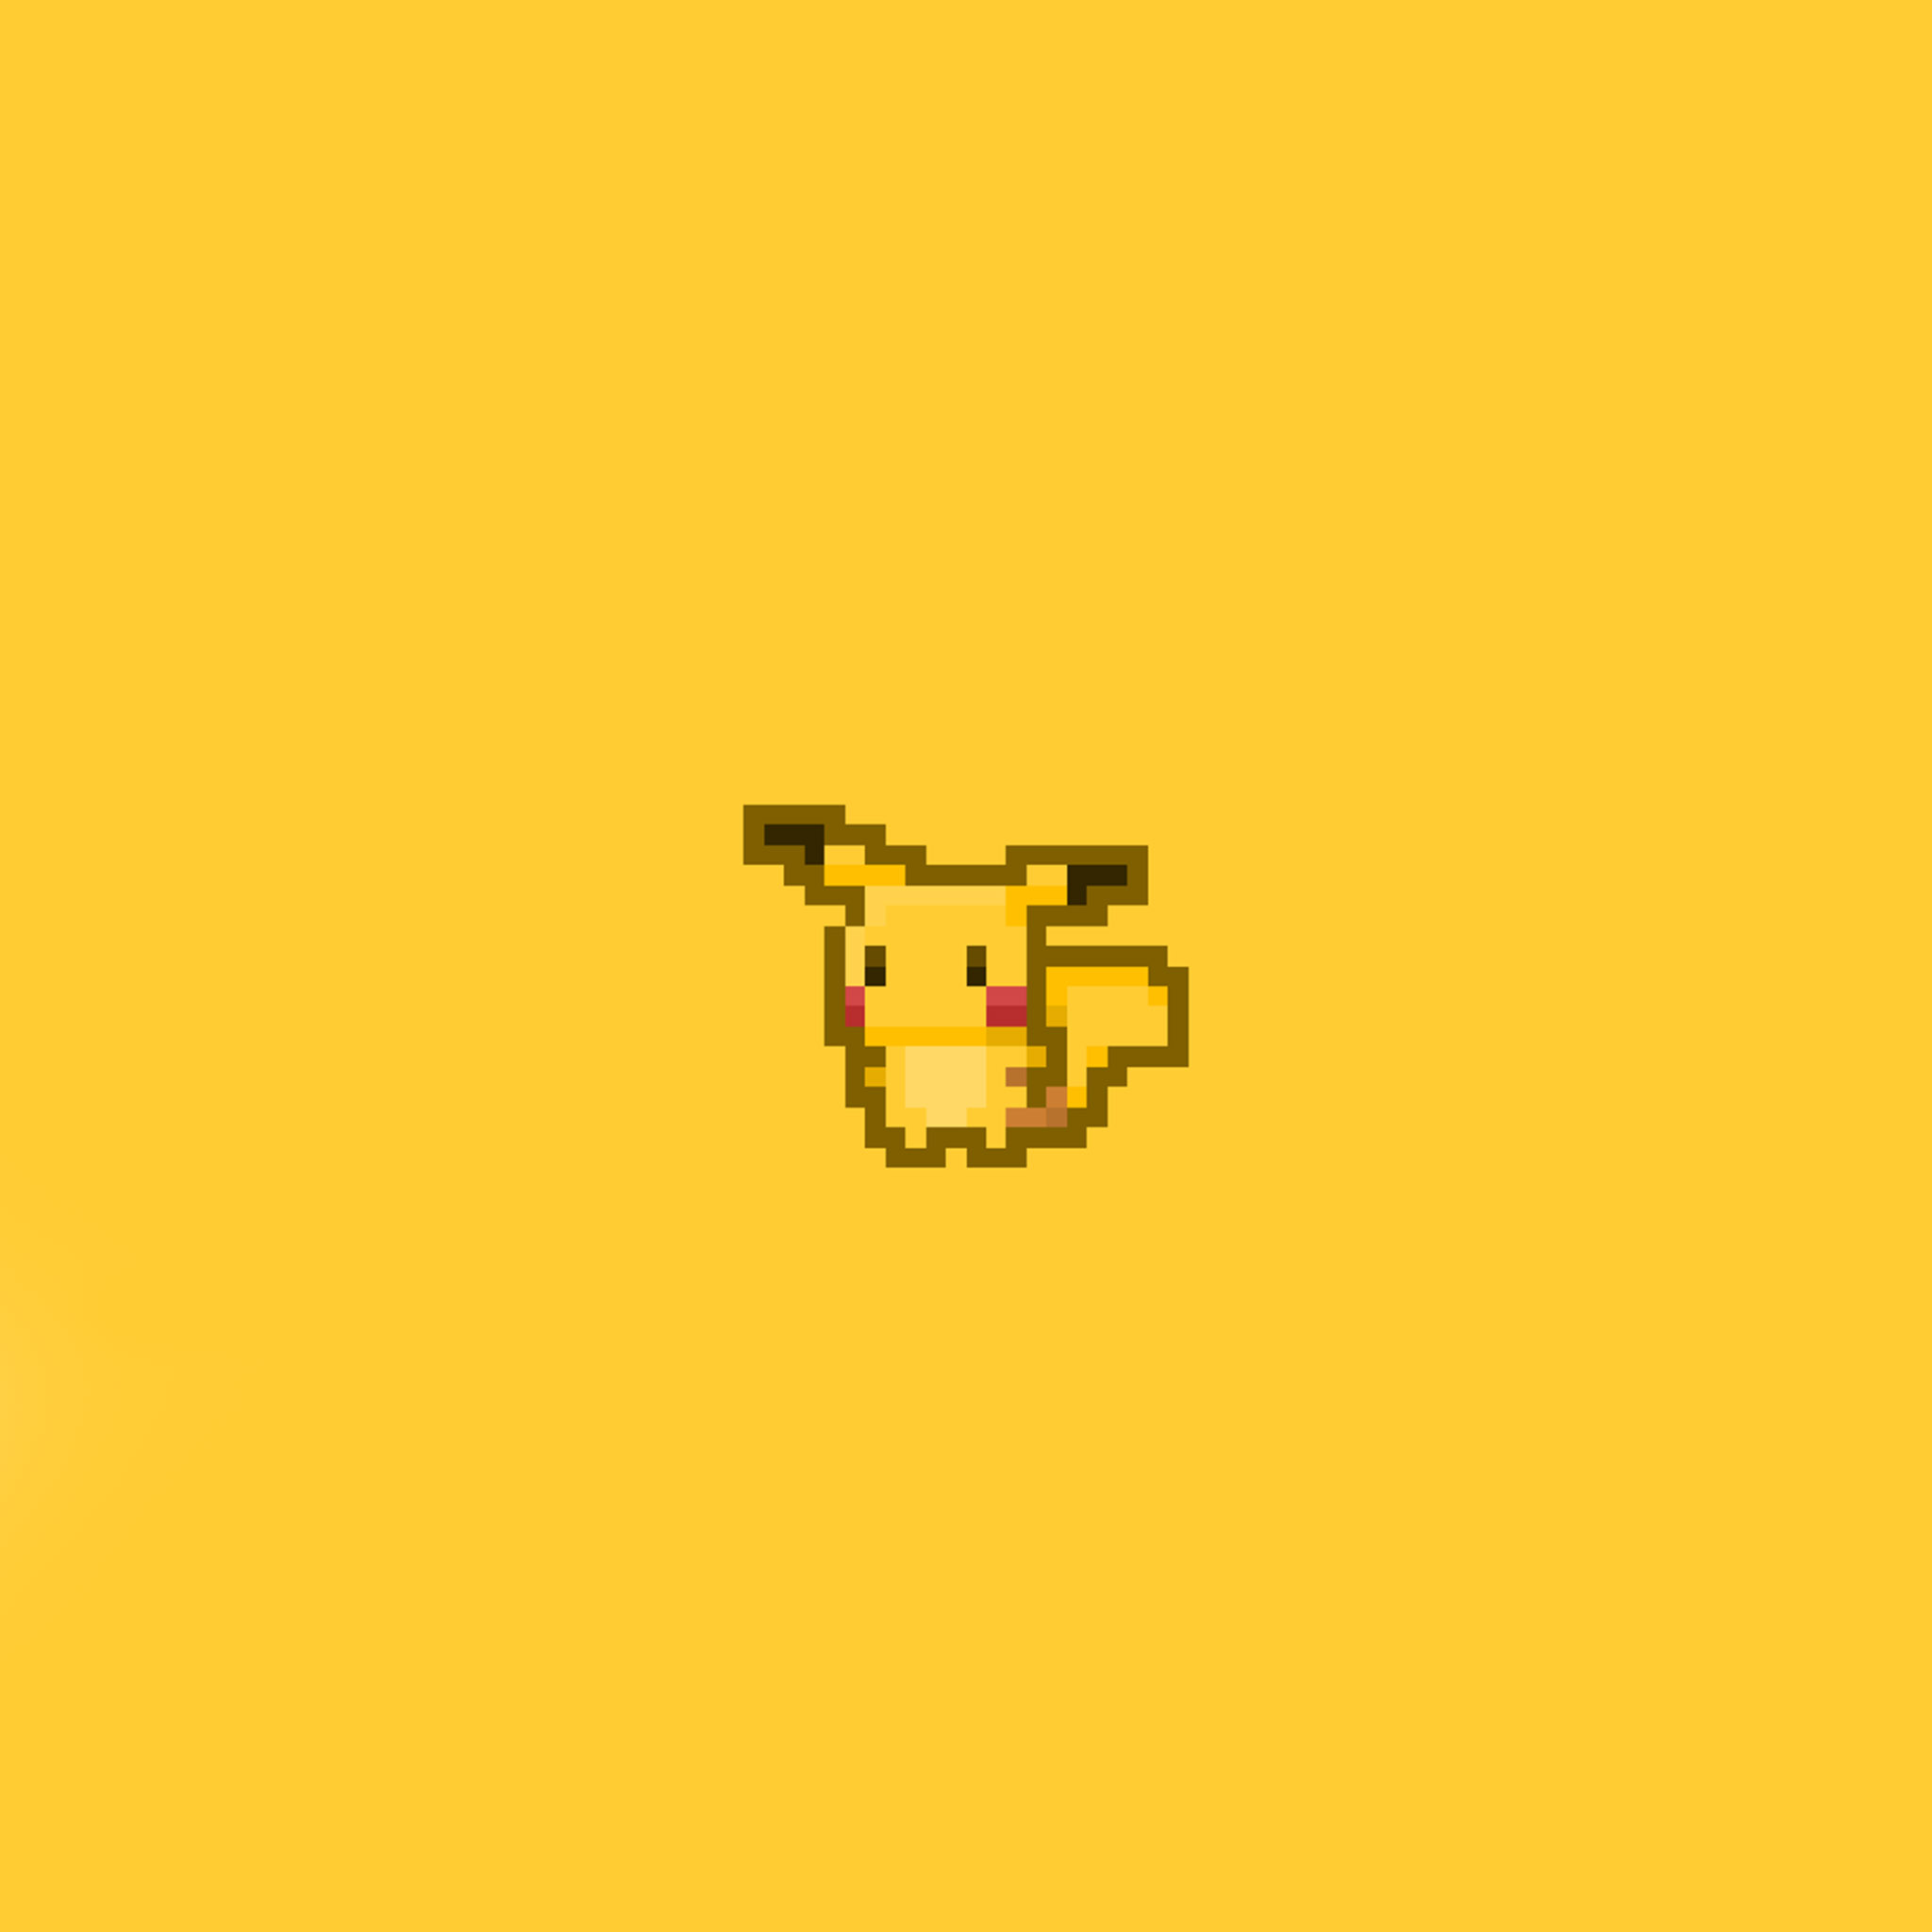 Ios7 Pixel Pikachu Parallax HD iPhone iPad Wallpaper